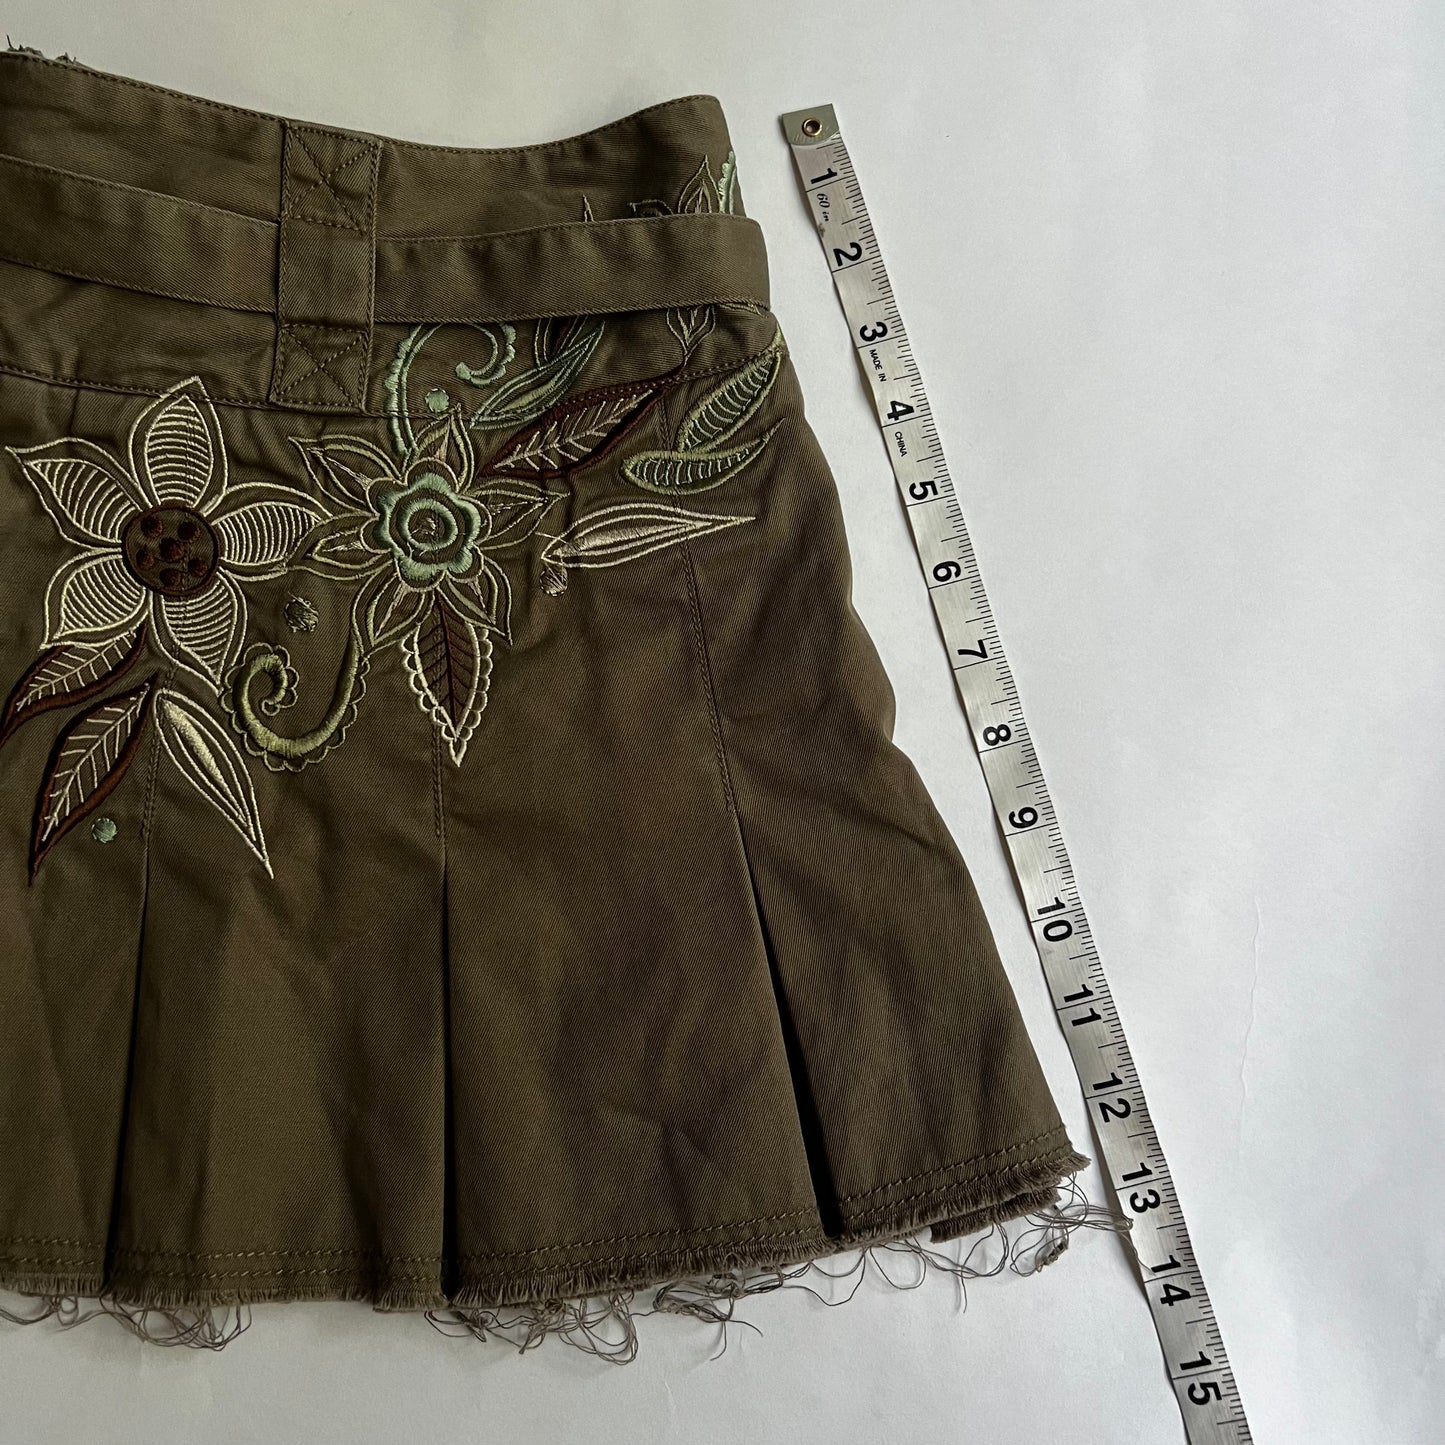 Vintage 2000s Fairycore Pleated Mini Skirt